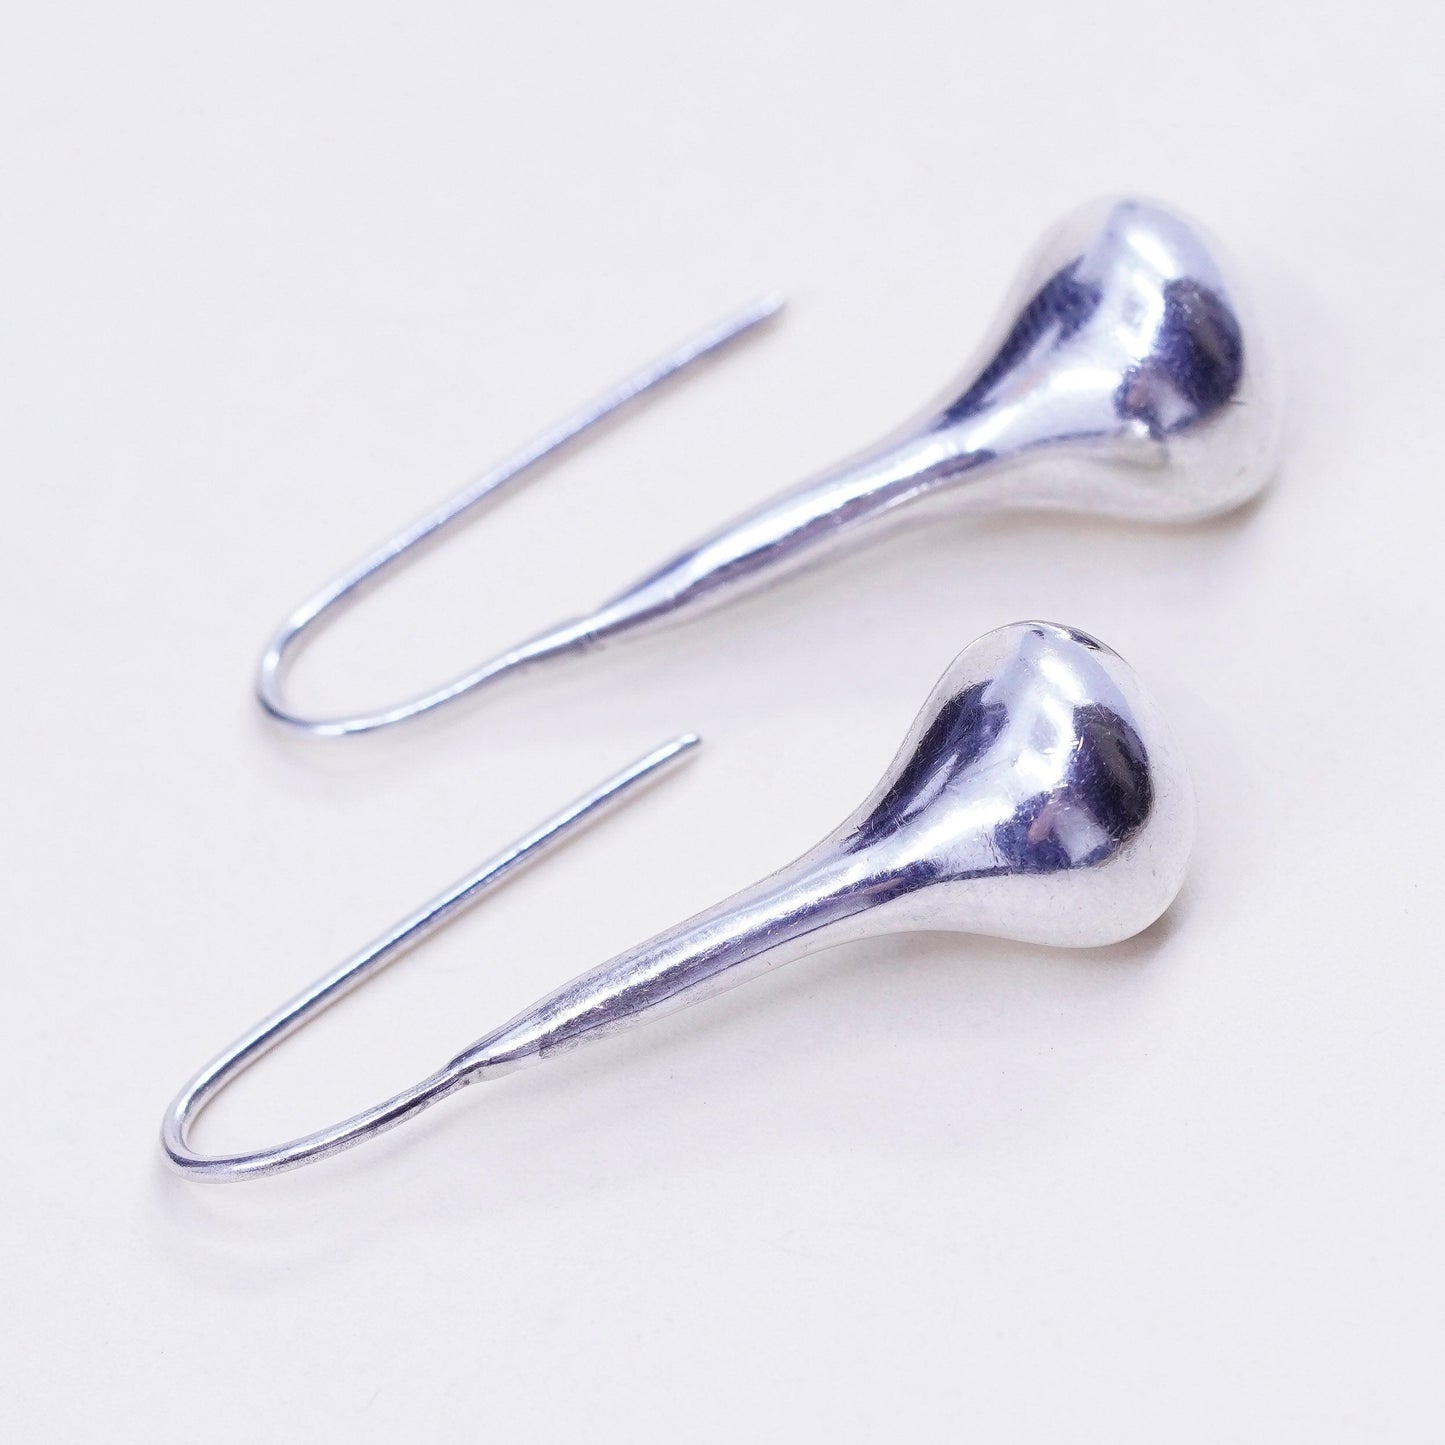 Vintage Sterling silver handmade earrings, 925 teardrop dangles